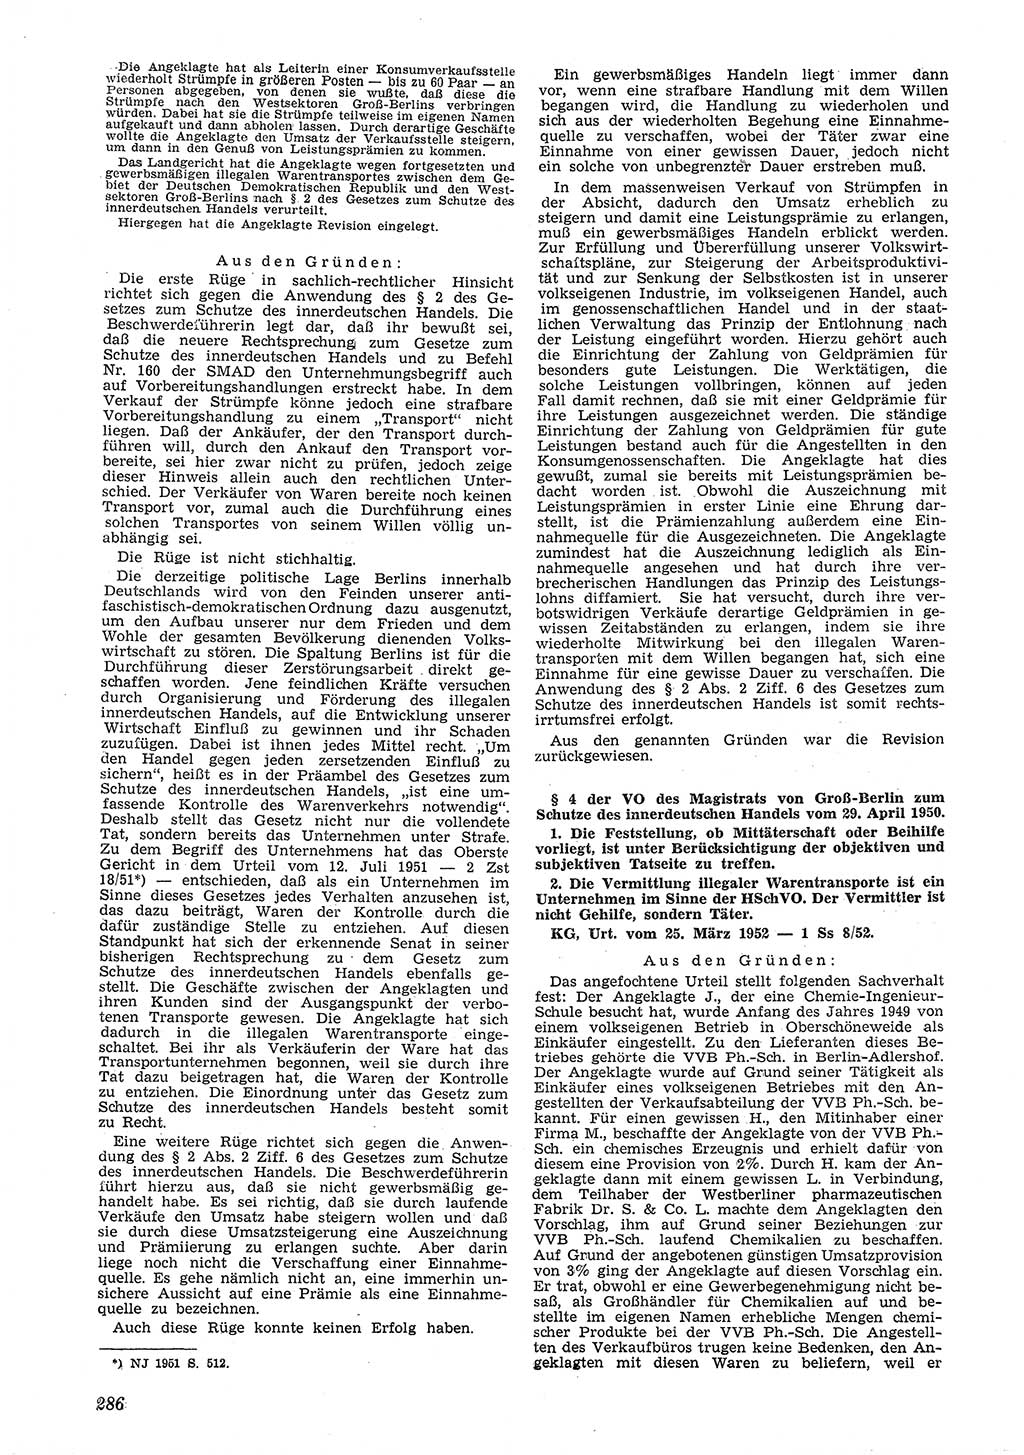 Neue Justiz (NJ), Zeitschrift für Recht und Rechtswissenschaft [Deutsche Demokratische Republik (DDR)], 6. Jahrgang 1952, Seite 286 (NJ DDR 1952, S. 286)